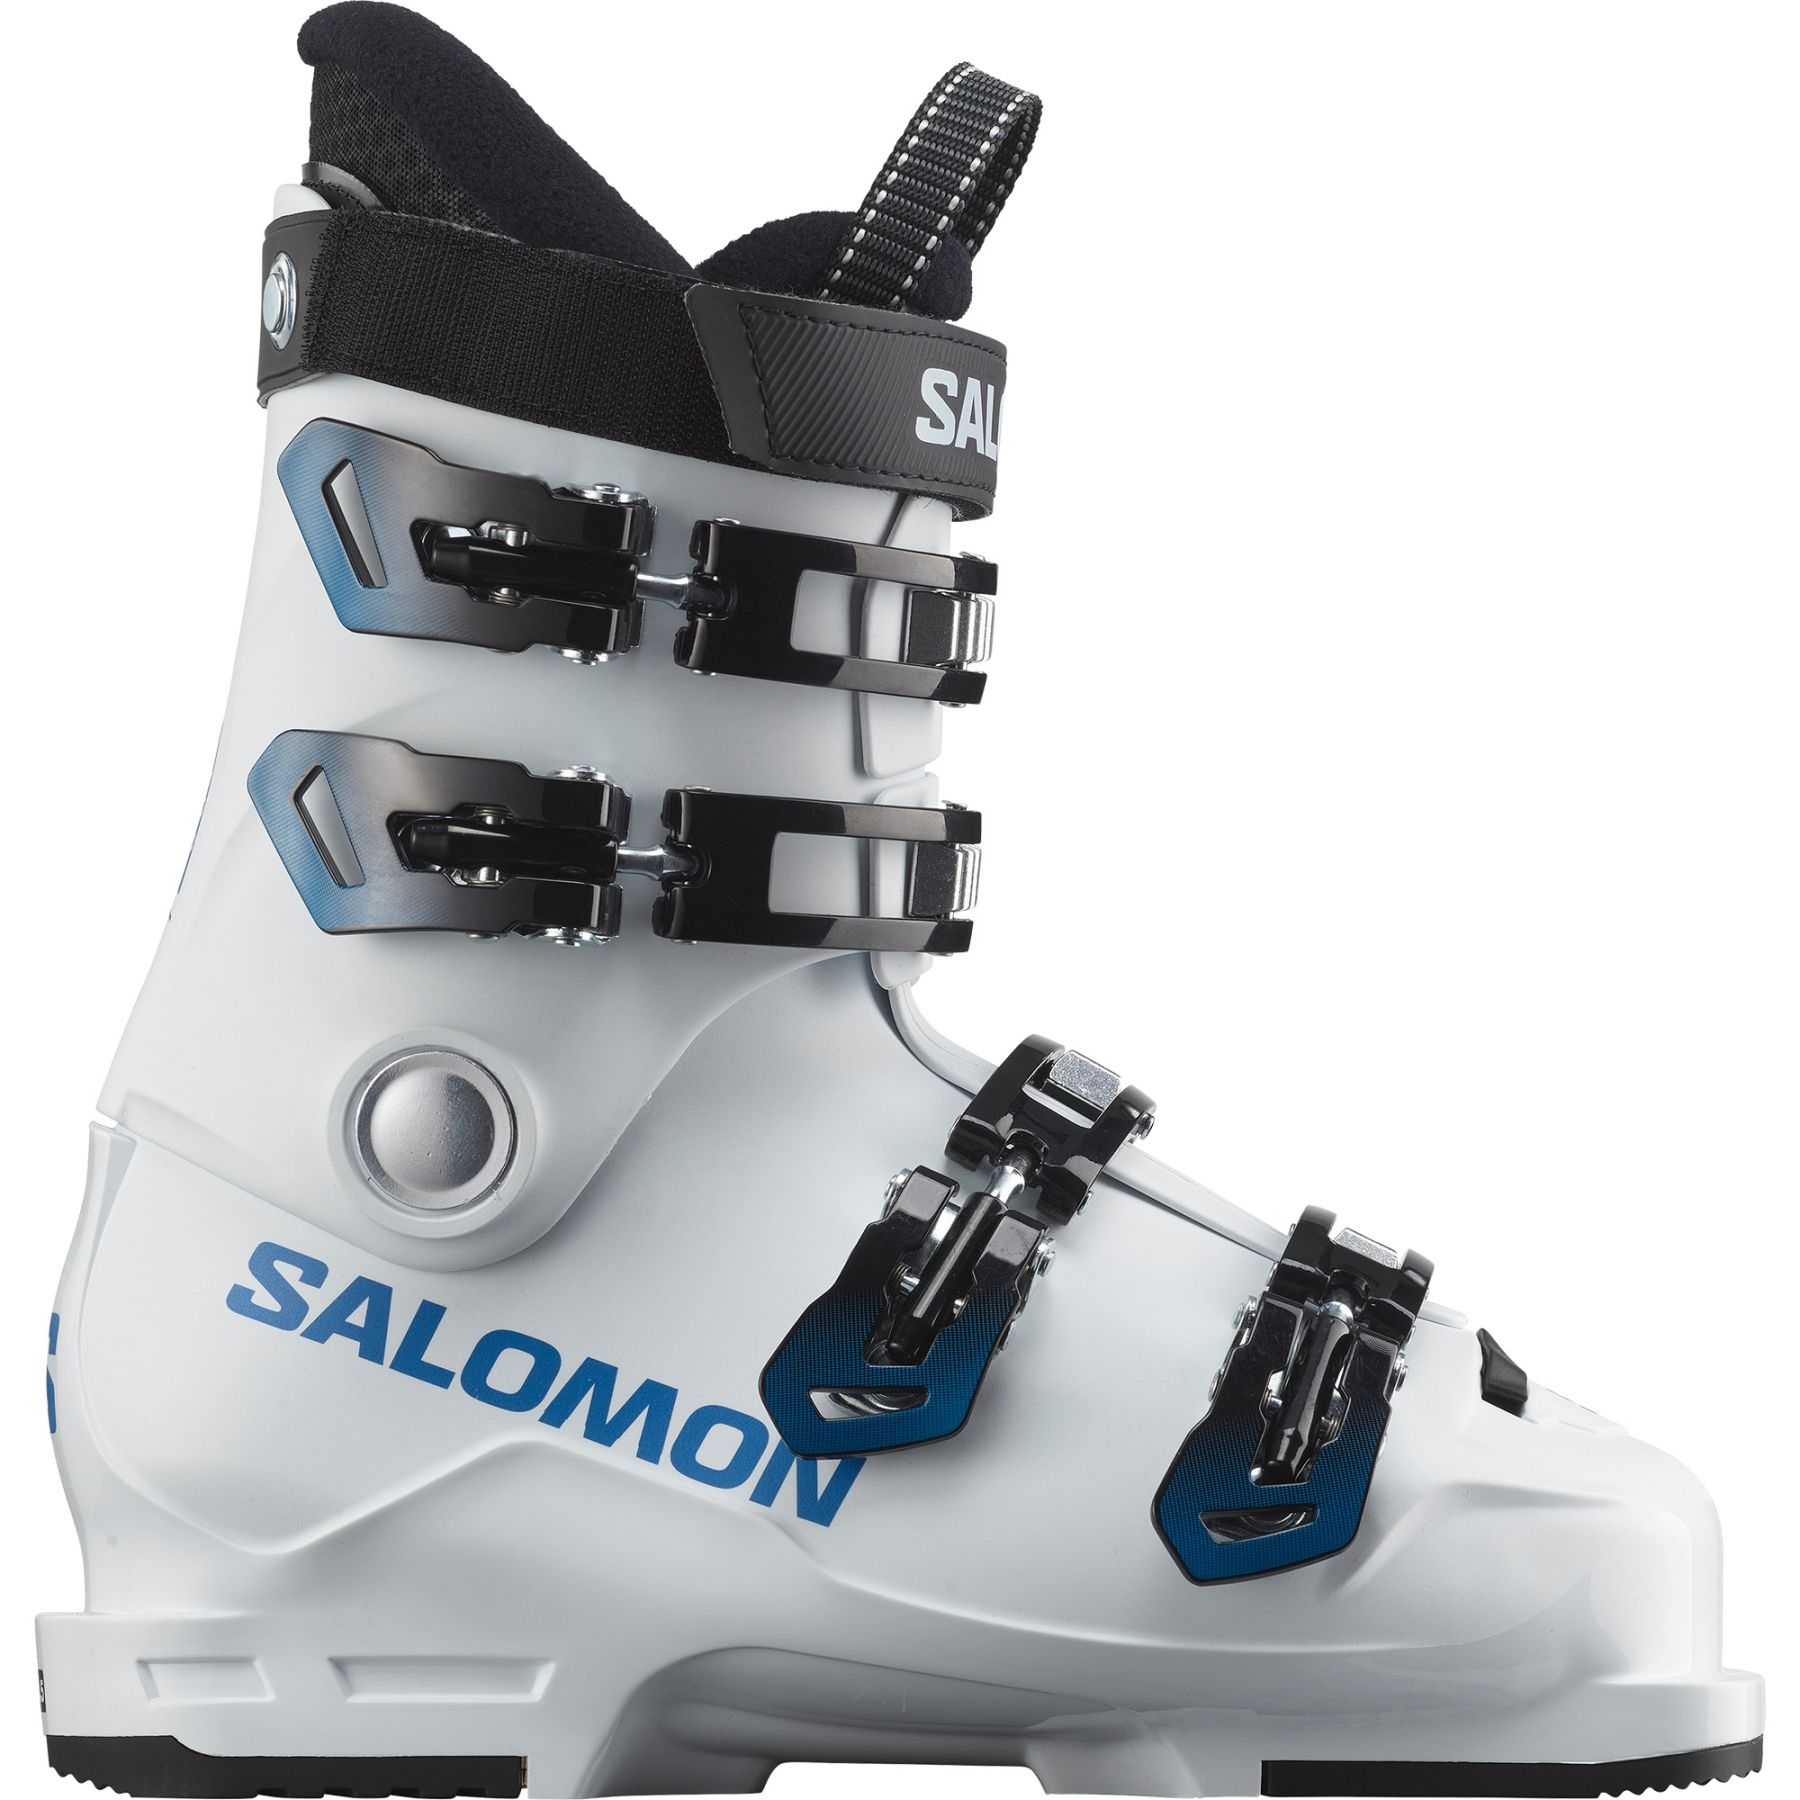 Billede af Salomon S/MAX 60T L, skistøvler, junior, hvid/blå hos Skisport.dk